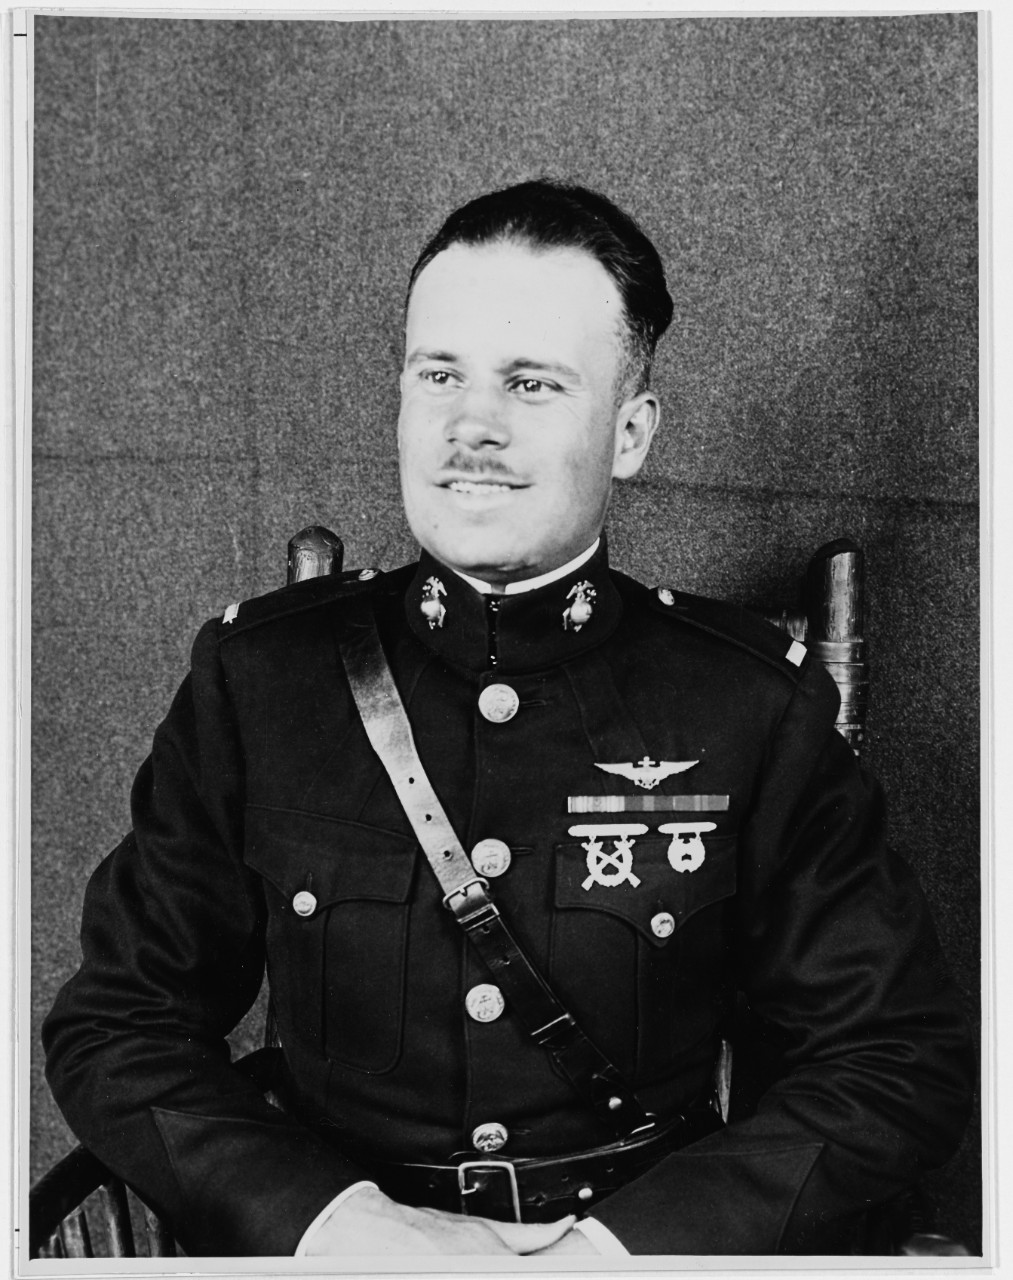 Photo #: NH 45855  First Lieutenant Christian F. Schilt, USMC